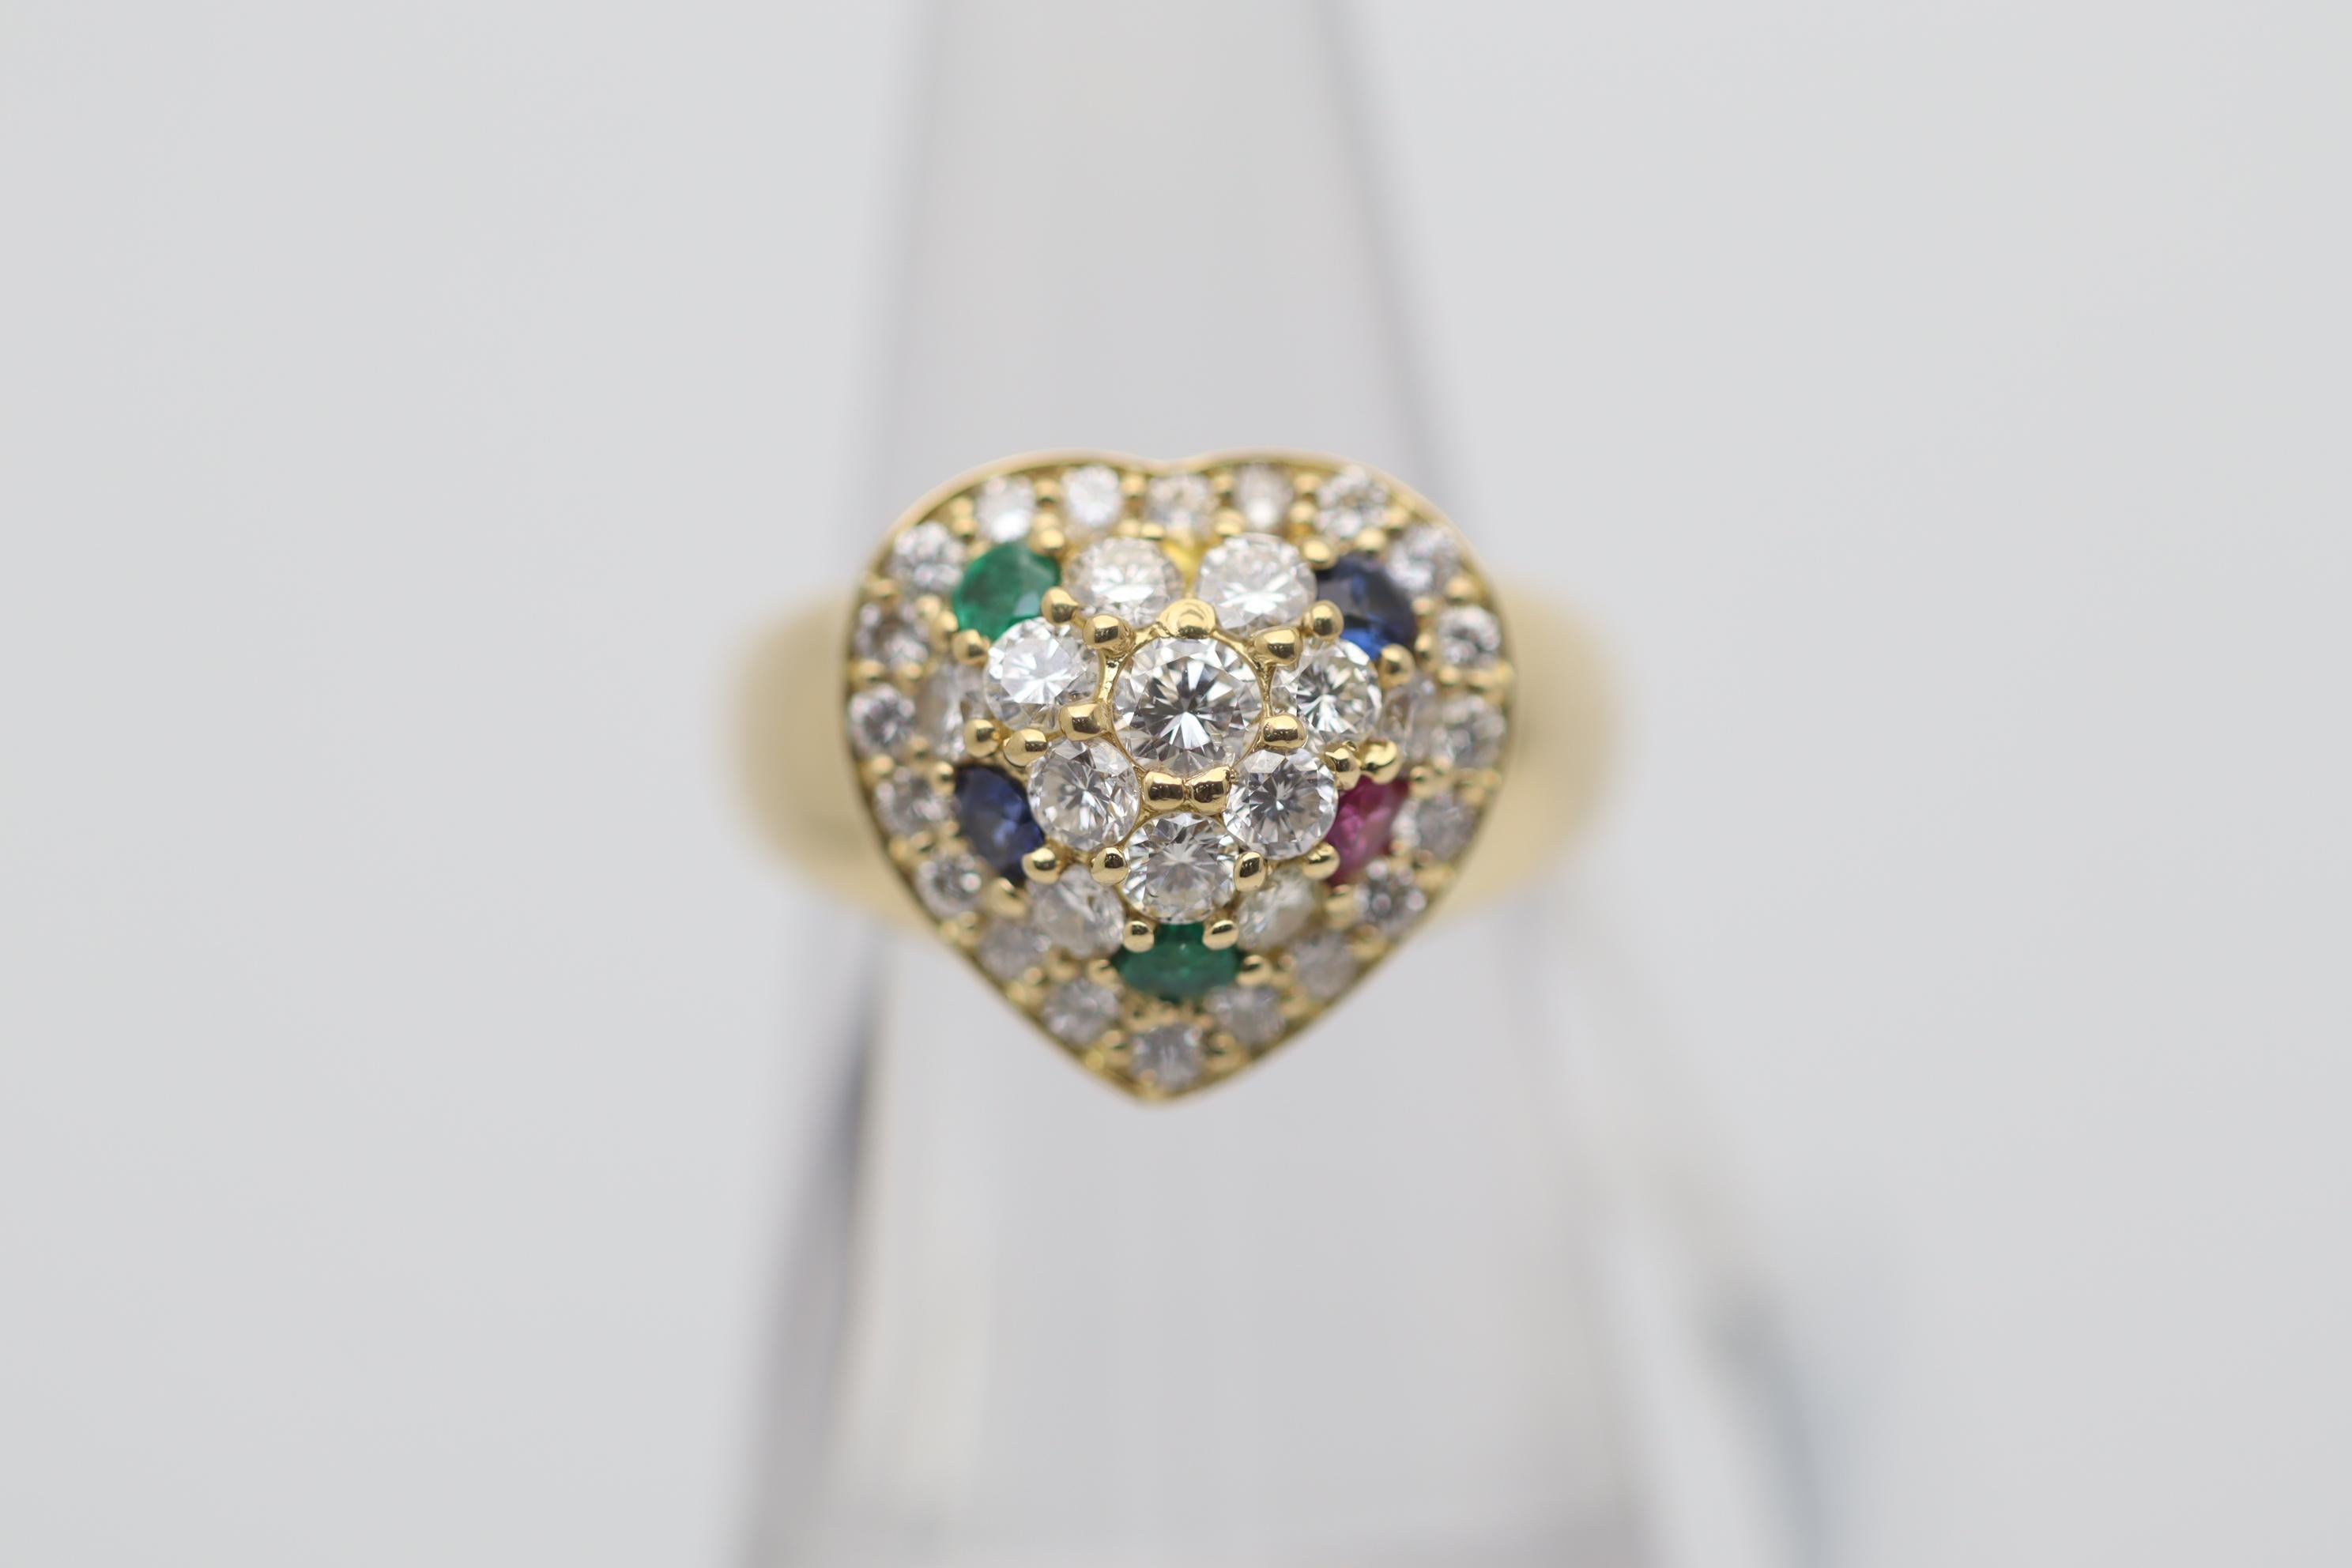 Ein süßer und stilvoller Ring mit einem goldenen Herzmotiv, das mit Diamanten und Edelsteinen besetzt ist. Das Herz ist mit 1,14 Karat runden Diamanten im Brillantschliff sowie zwei Smaragden, zwei Saphiren und einem Rubin besetzt, die für Farbe und